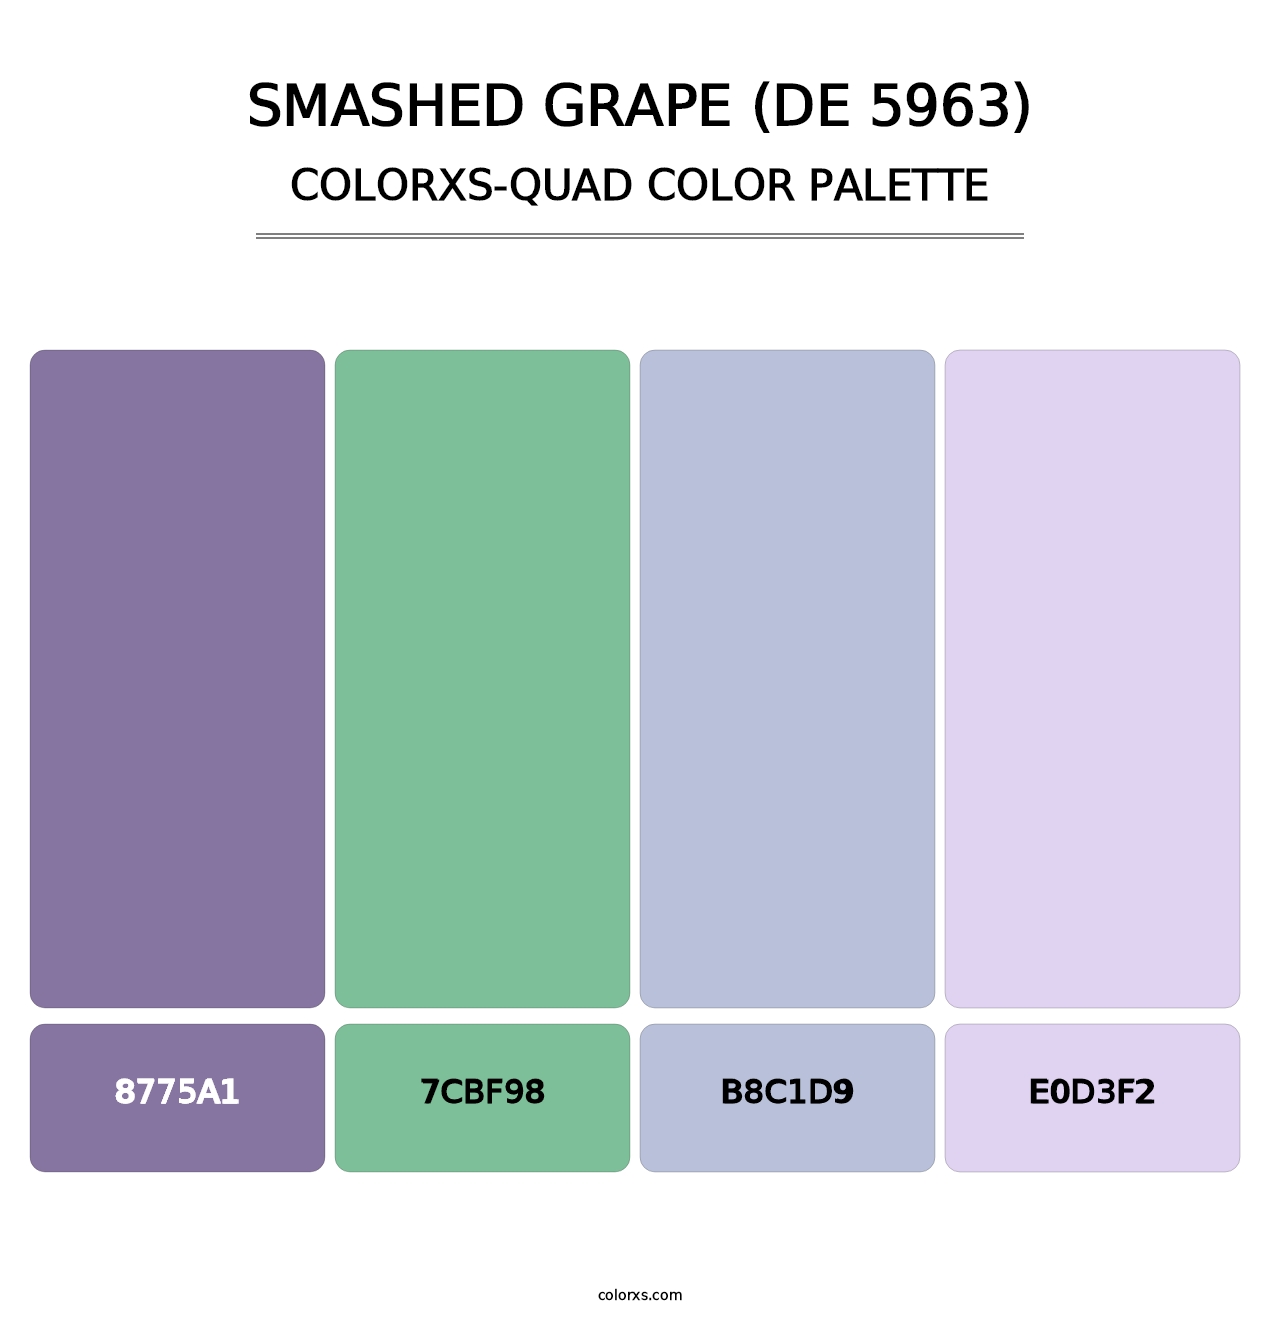 Smashed Grape (DE 5963) - Colorxs Quad Palette